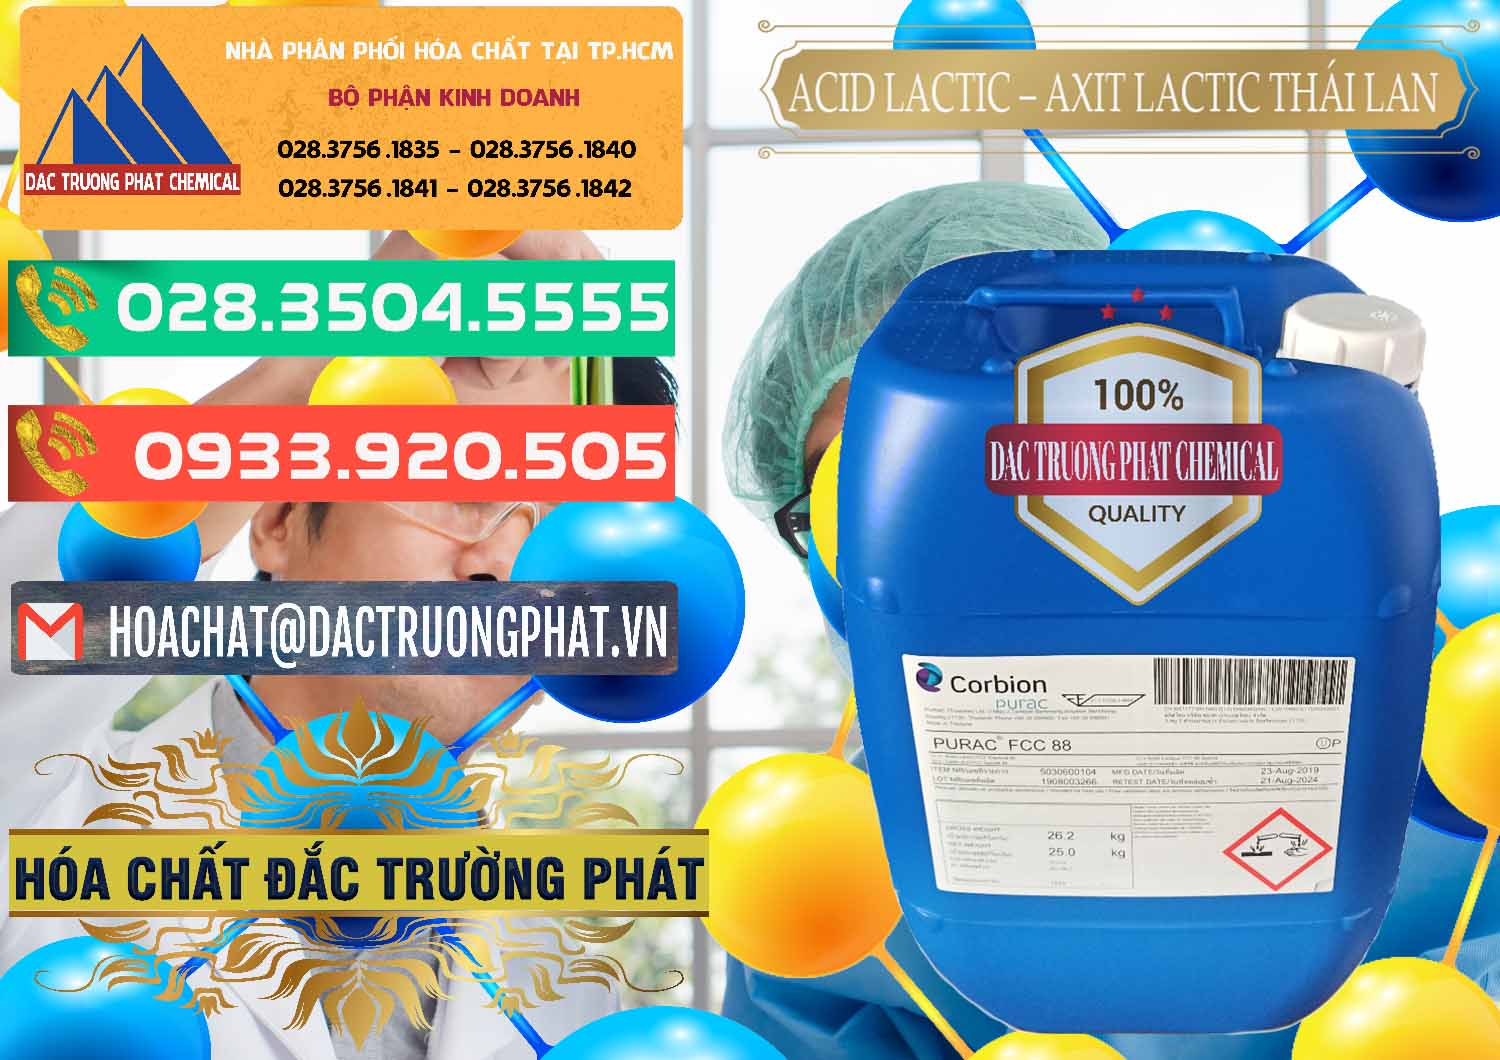 Nơi chuyên bán ( cung cấp ) Acid Lactic – Axit Lactic Thái Lan Purac FCC 88 - 0012 - Công ty chuyên kinh doanh và phân phối hóa chất tại TP.HCM - congtyhoachat.com.vn